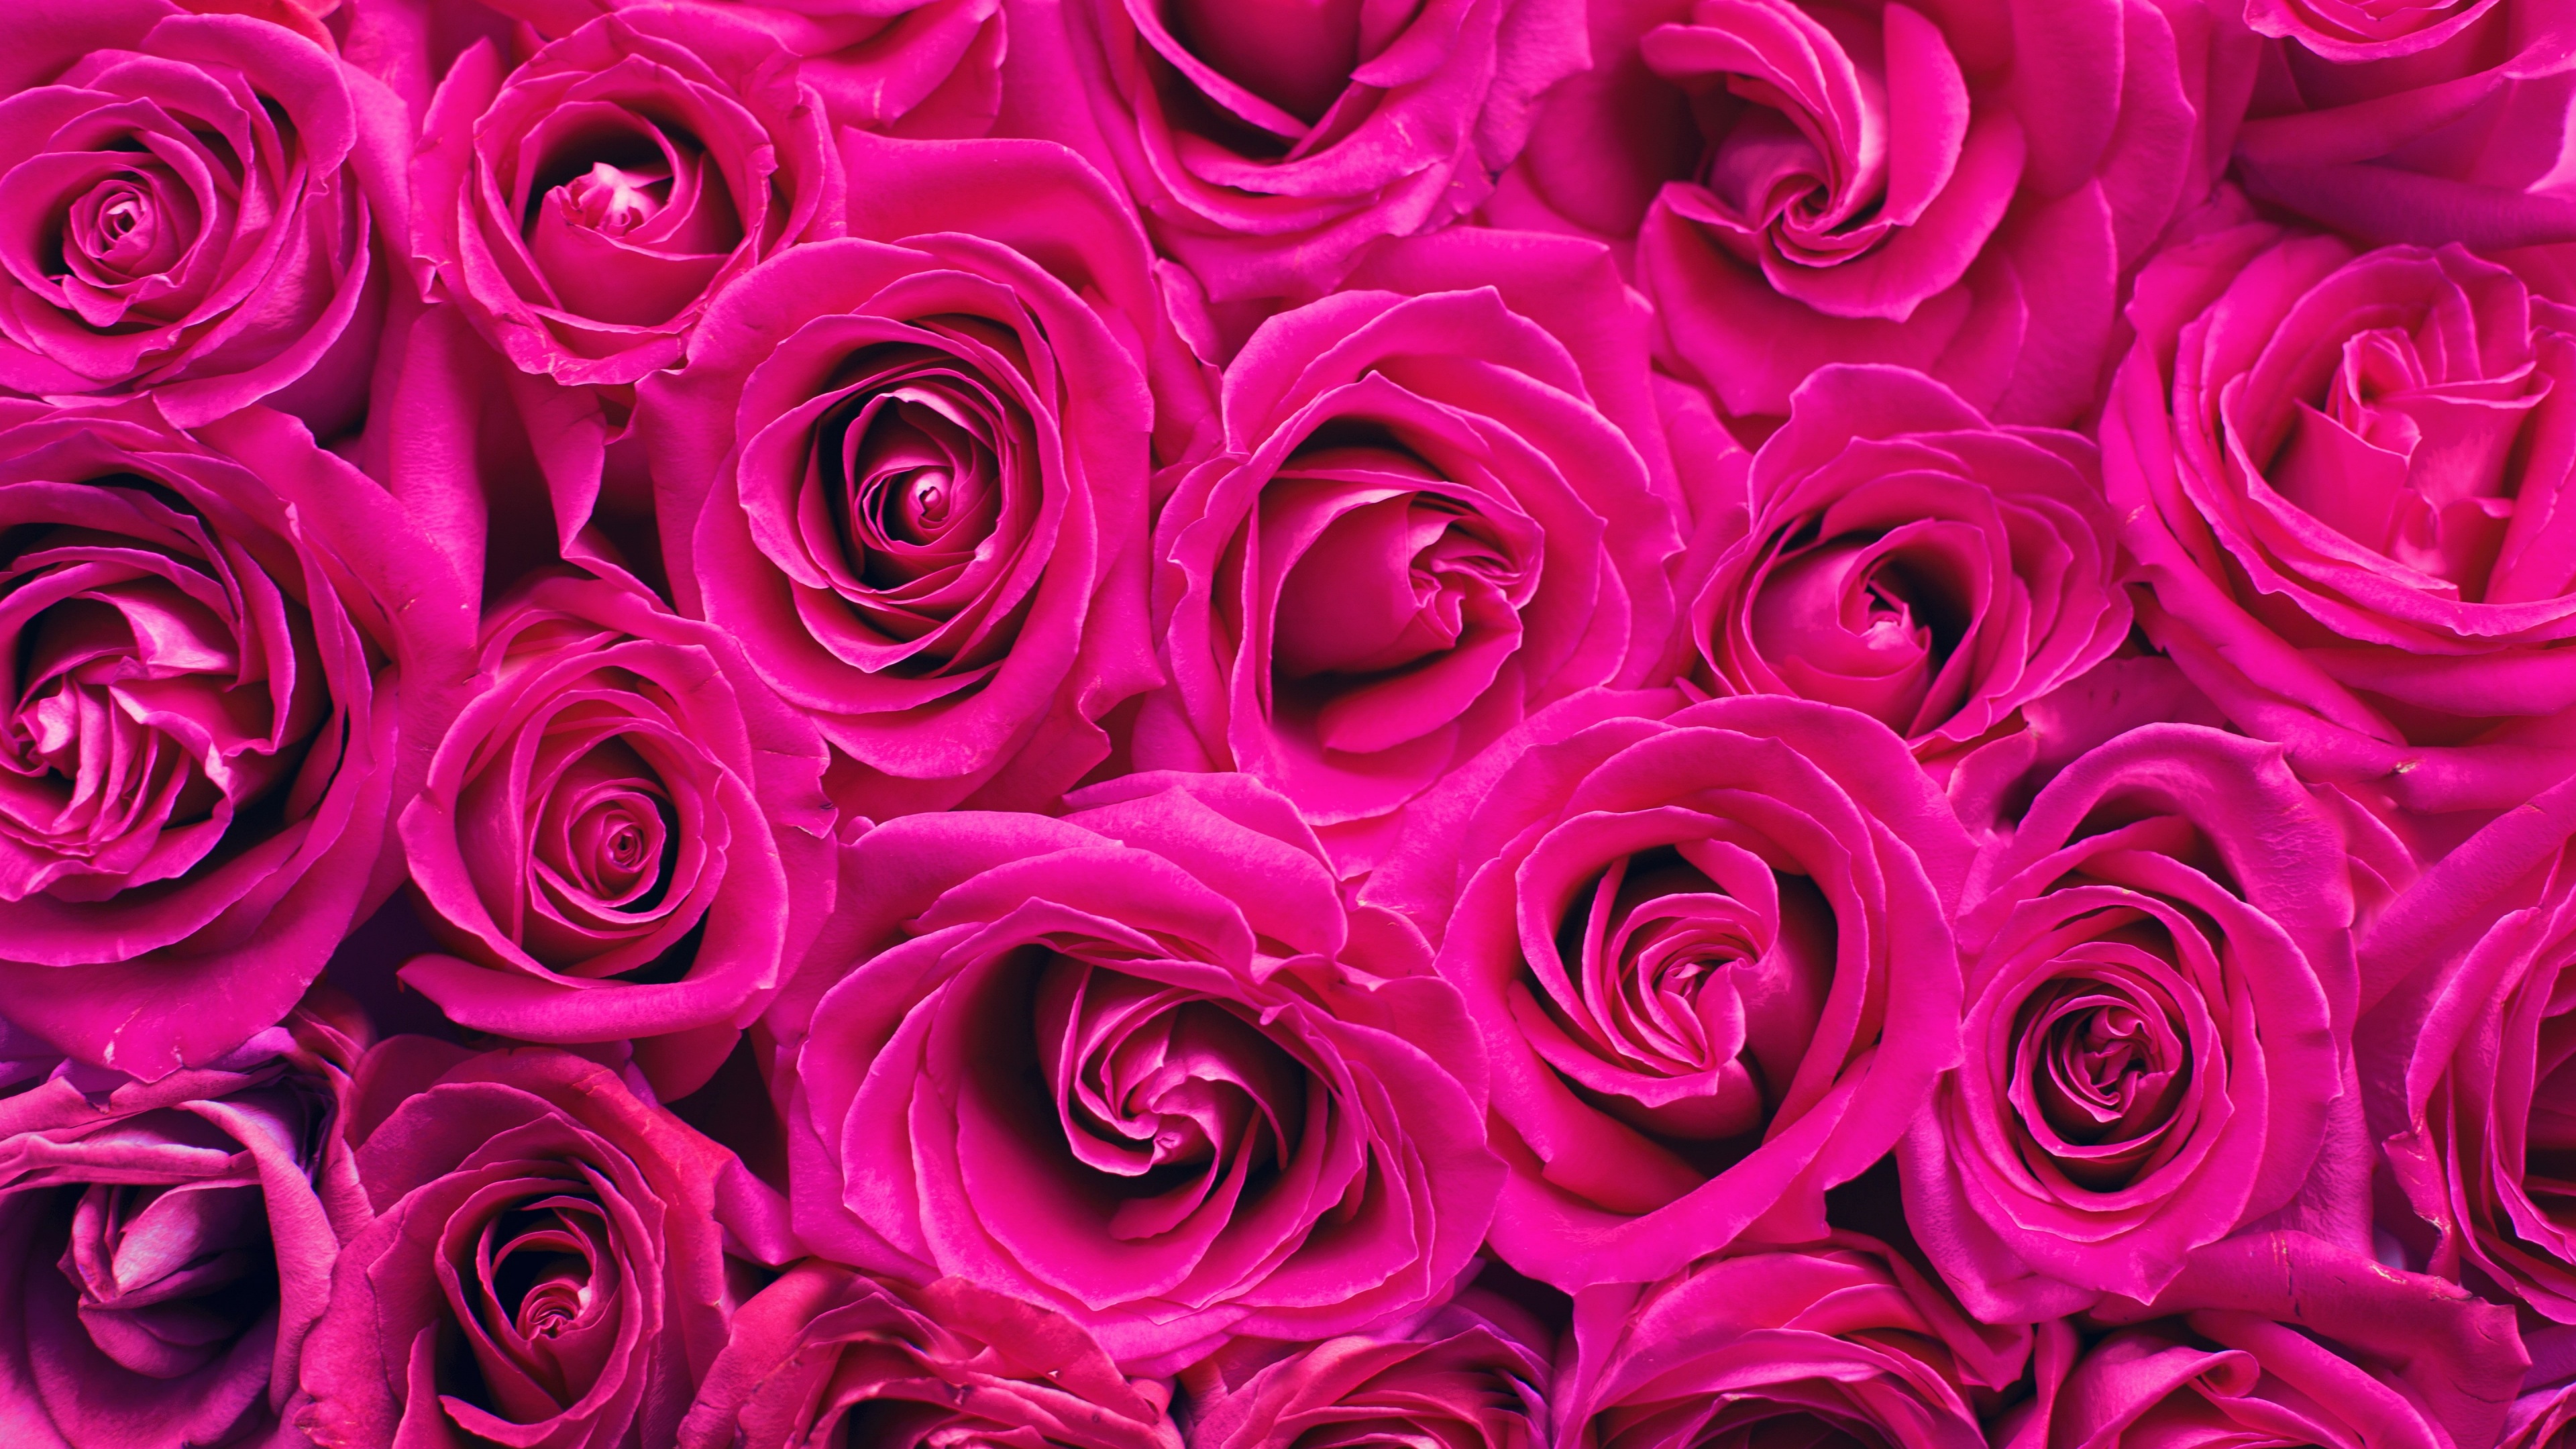 Hãy chiêm ngưỡng vẻ đẹp tuyệt đẹp của hoa hồng hồng trong 4K siêu nét. Màu sắc tươi sáng, thật mê hoặc màu hồng này sẽ chinh phục trái tim bạn và tạo ra một không gian vô cùng lãng mạn.